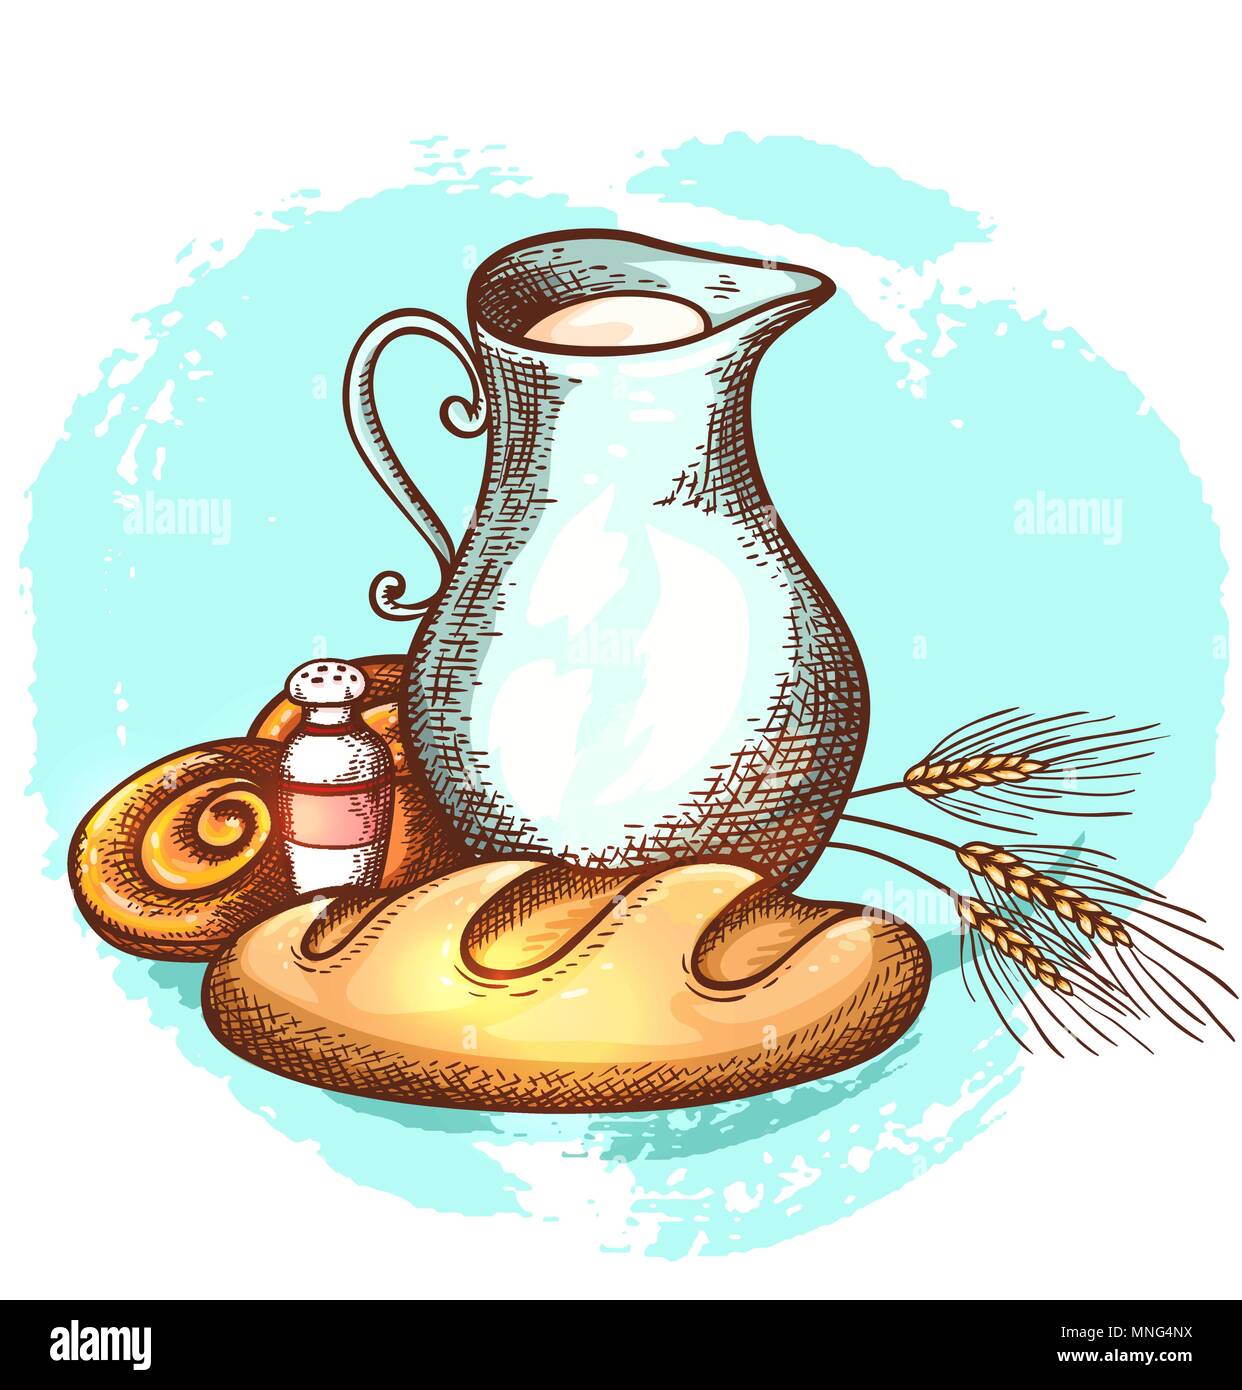 Jarra de leche ilustración del vector. Ilustración de desayuno